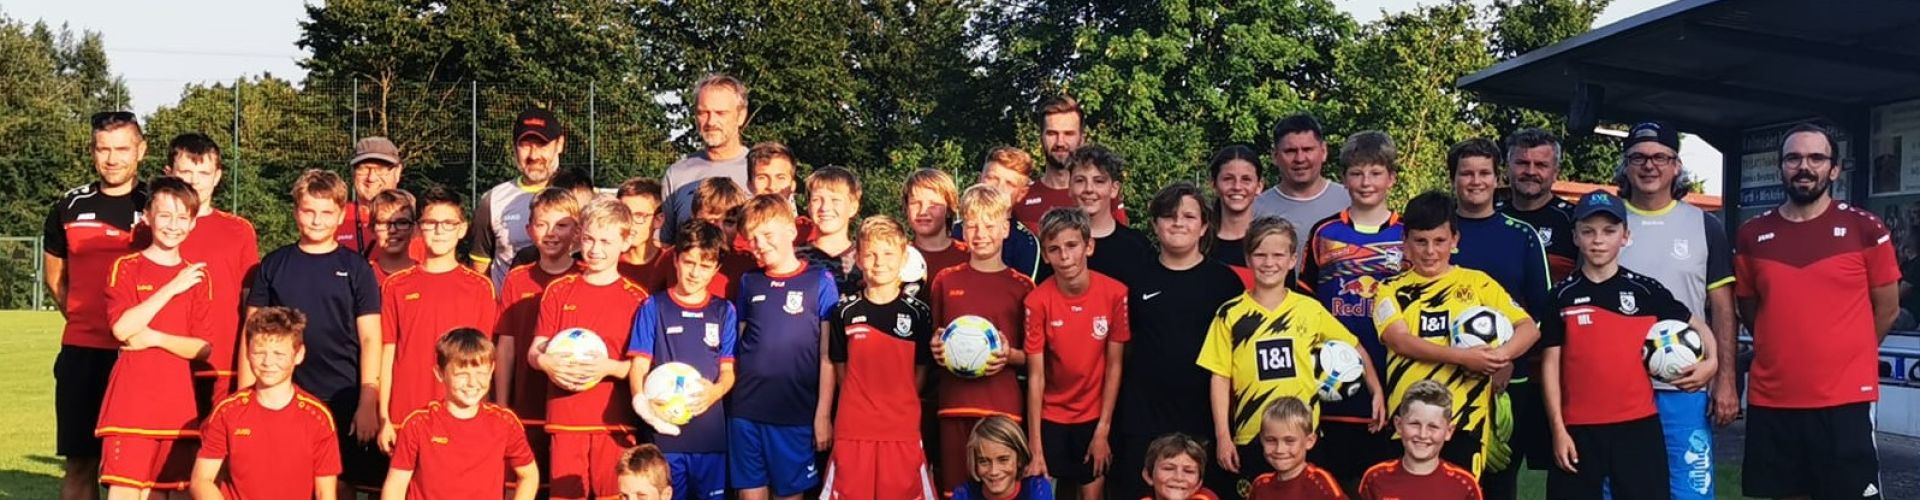 Zwei Tage lang veranstaltete der DJK-SV Mirskofen sein diesjähriges Fußball-Jugendcamp. Am ersten Tag waren die E- und die D-Jugenden an der Reihe.